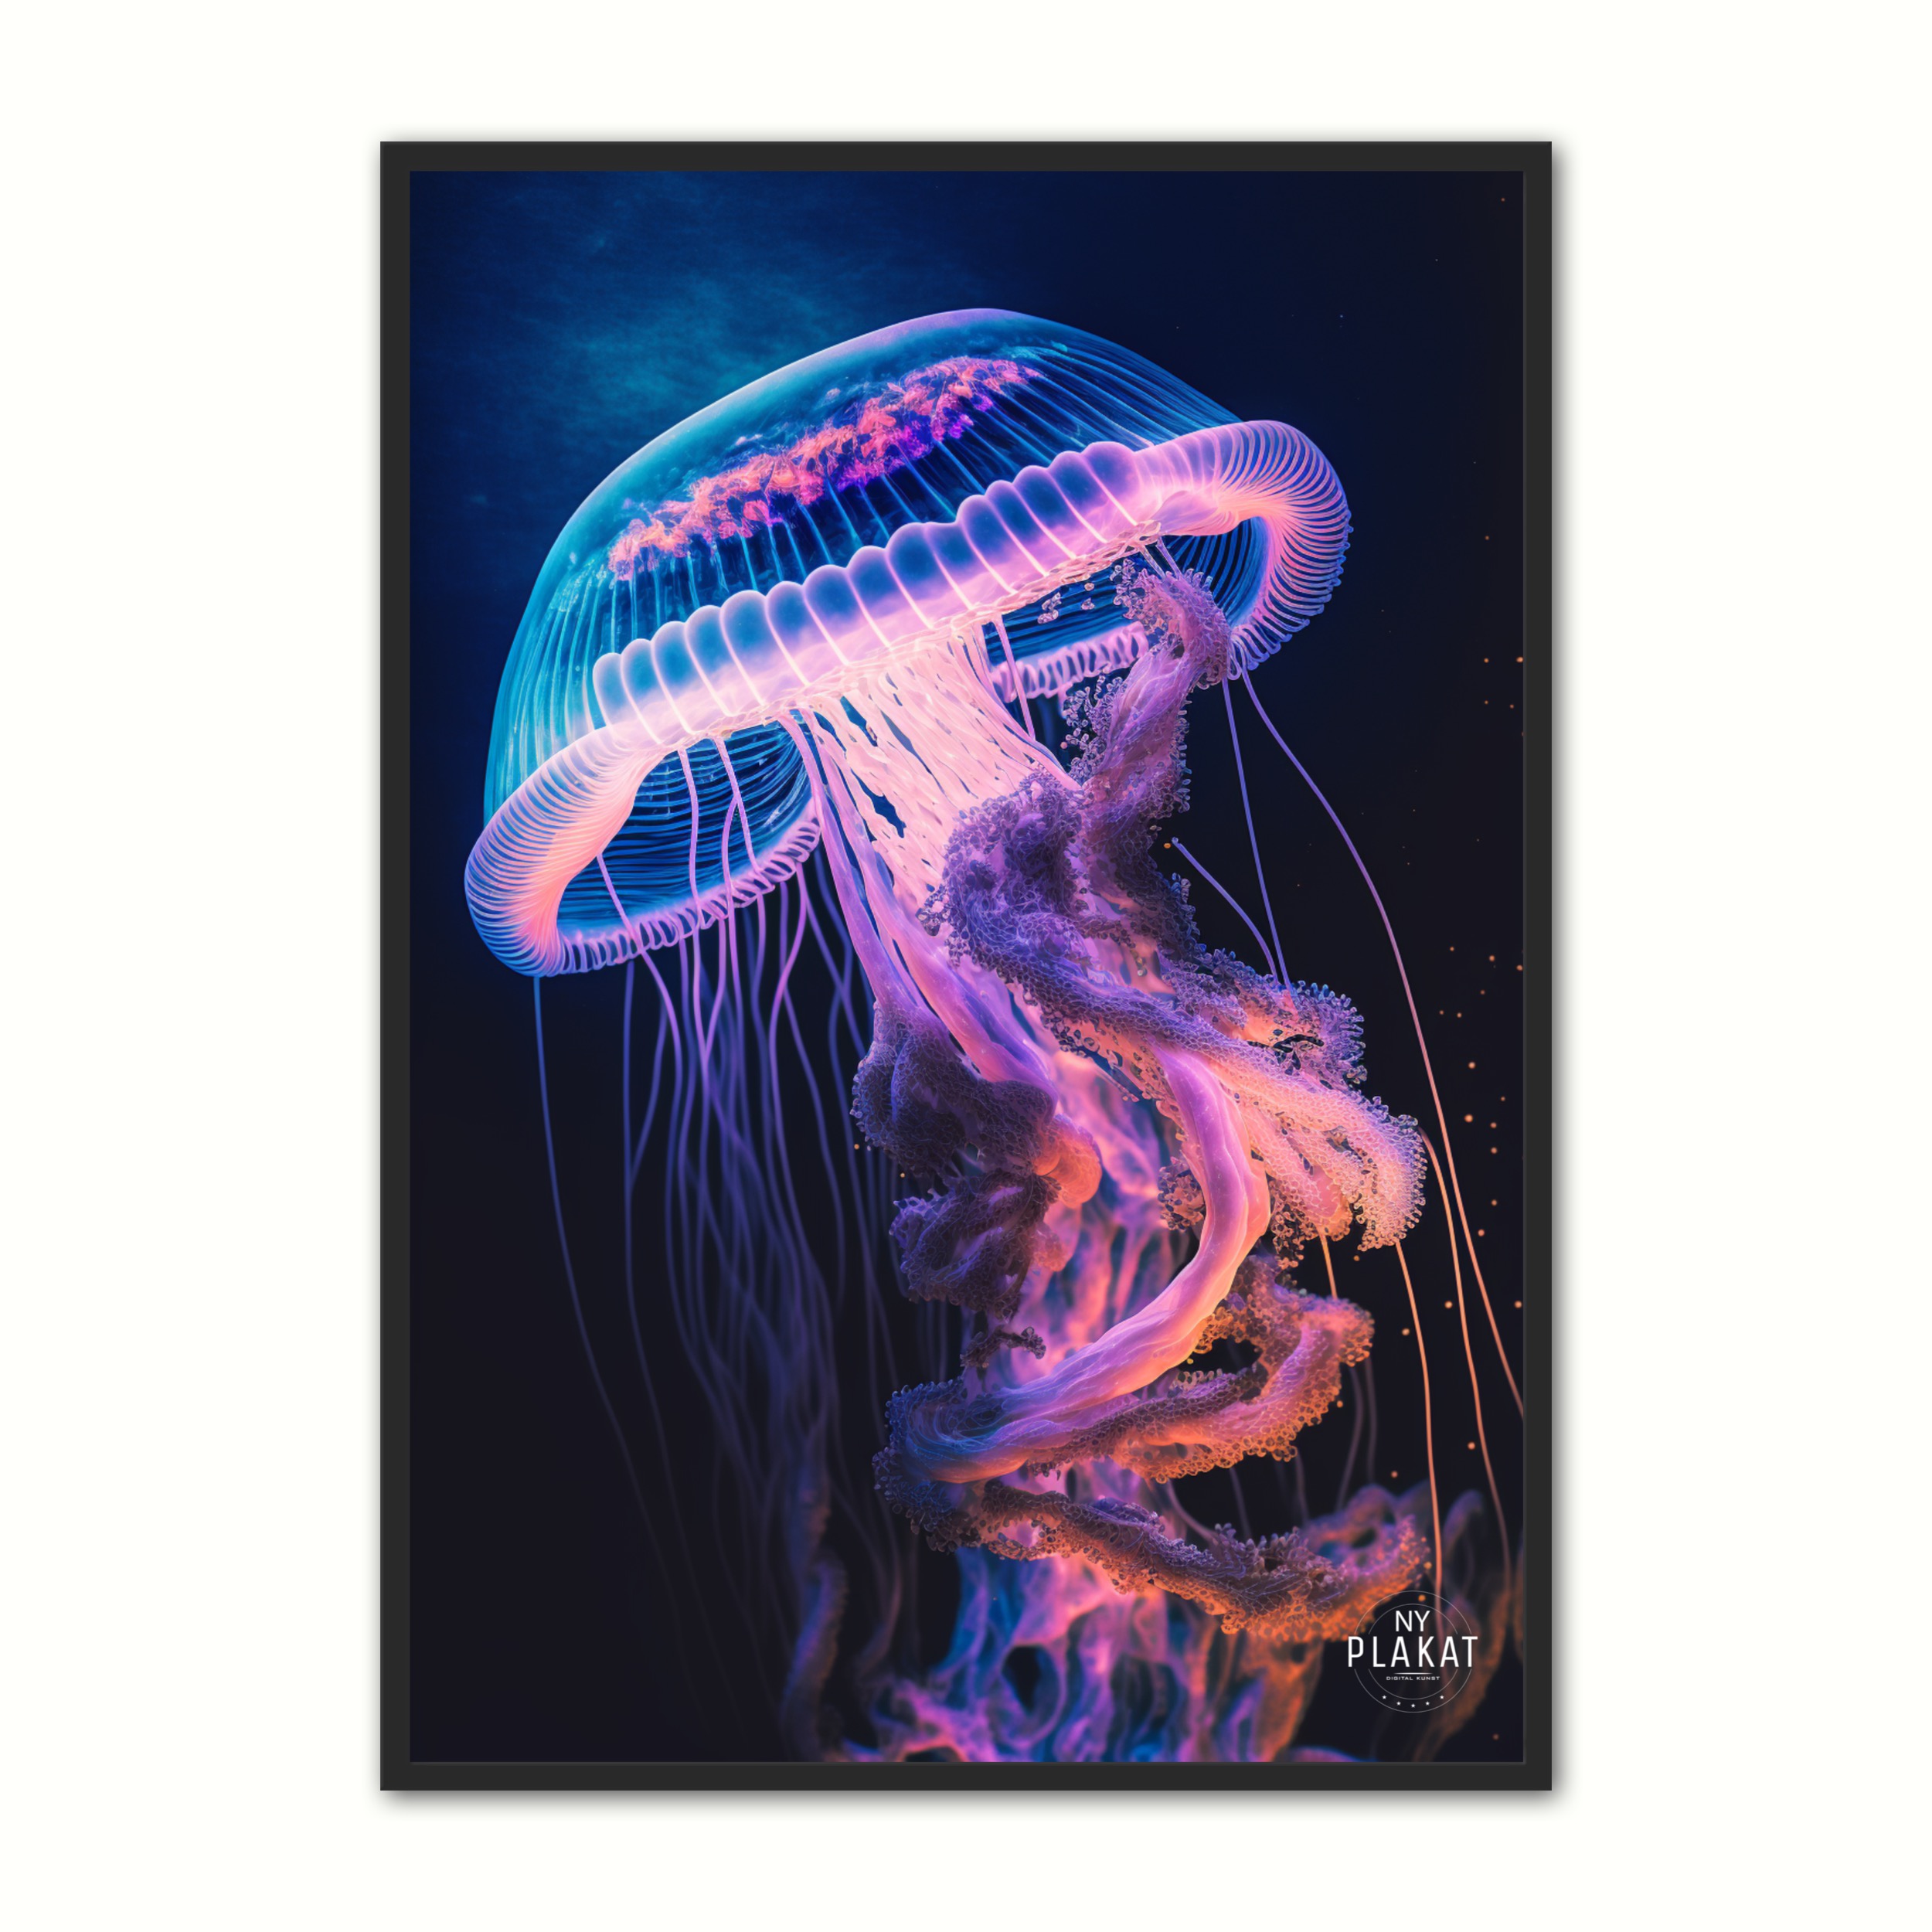 Se Jellyfish plakat No. 6 21 x 29,7 cm (A4) hos Nyplakat.dk